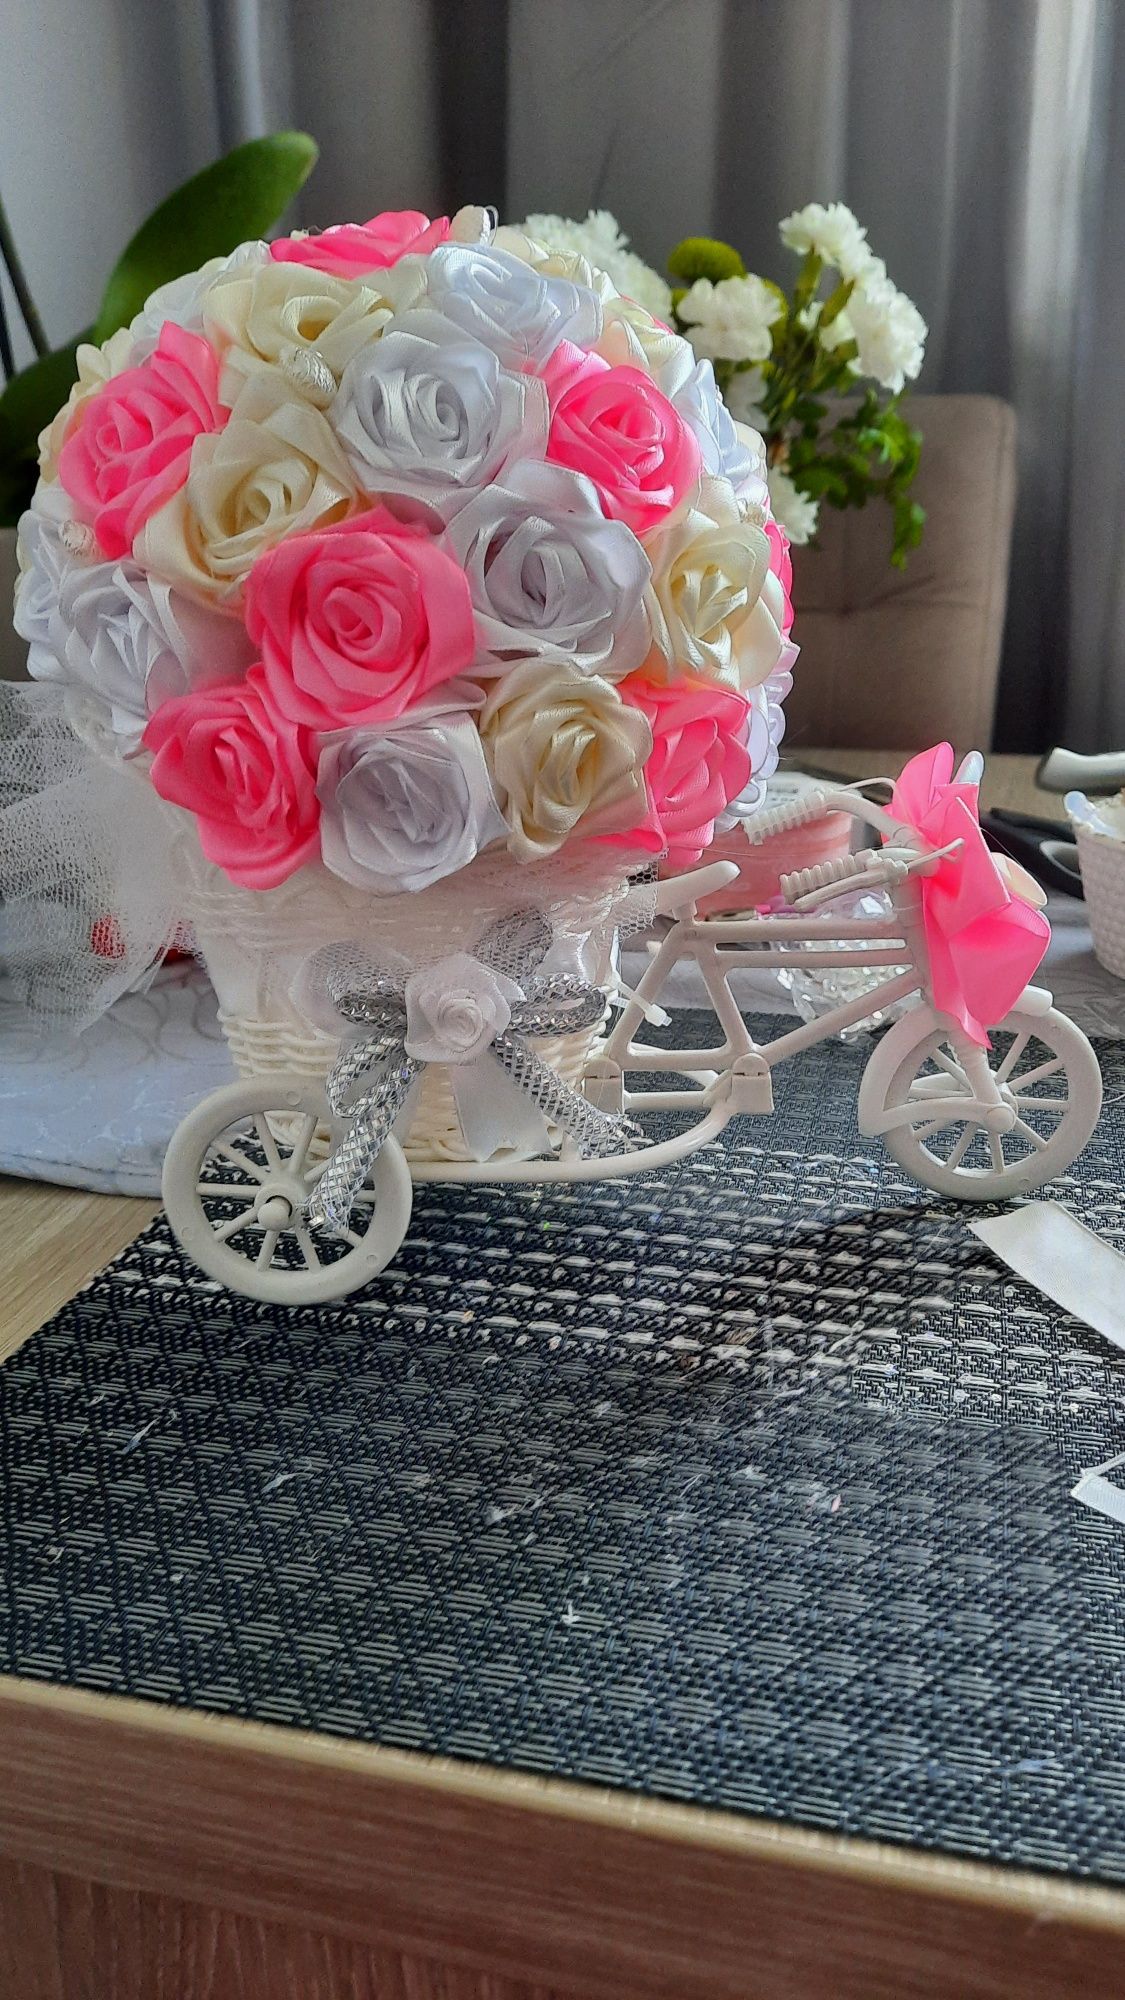 Rowerek z różyczkami